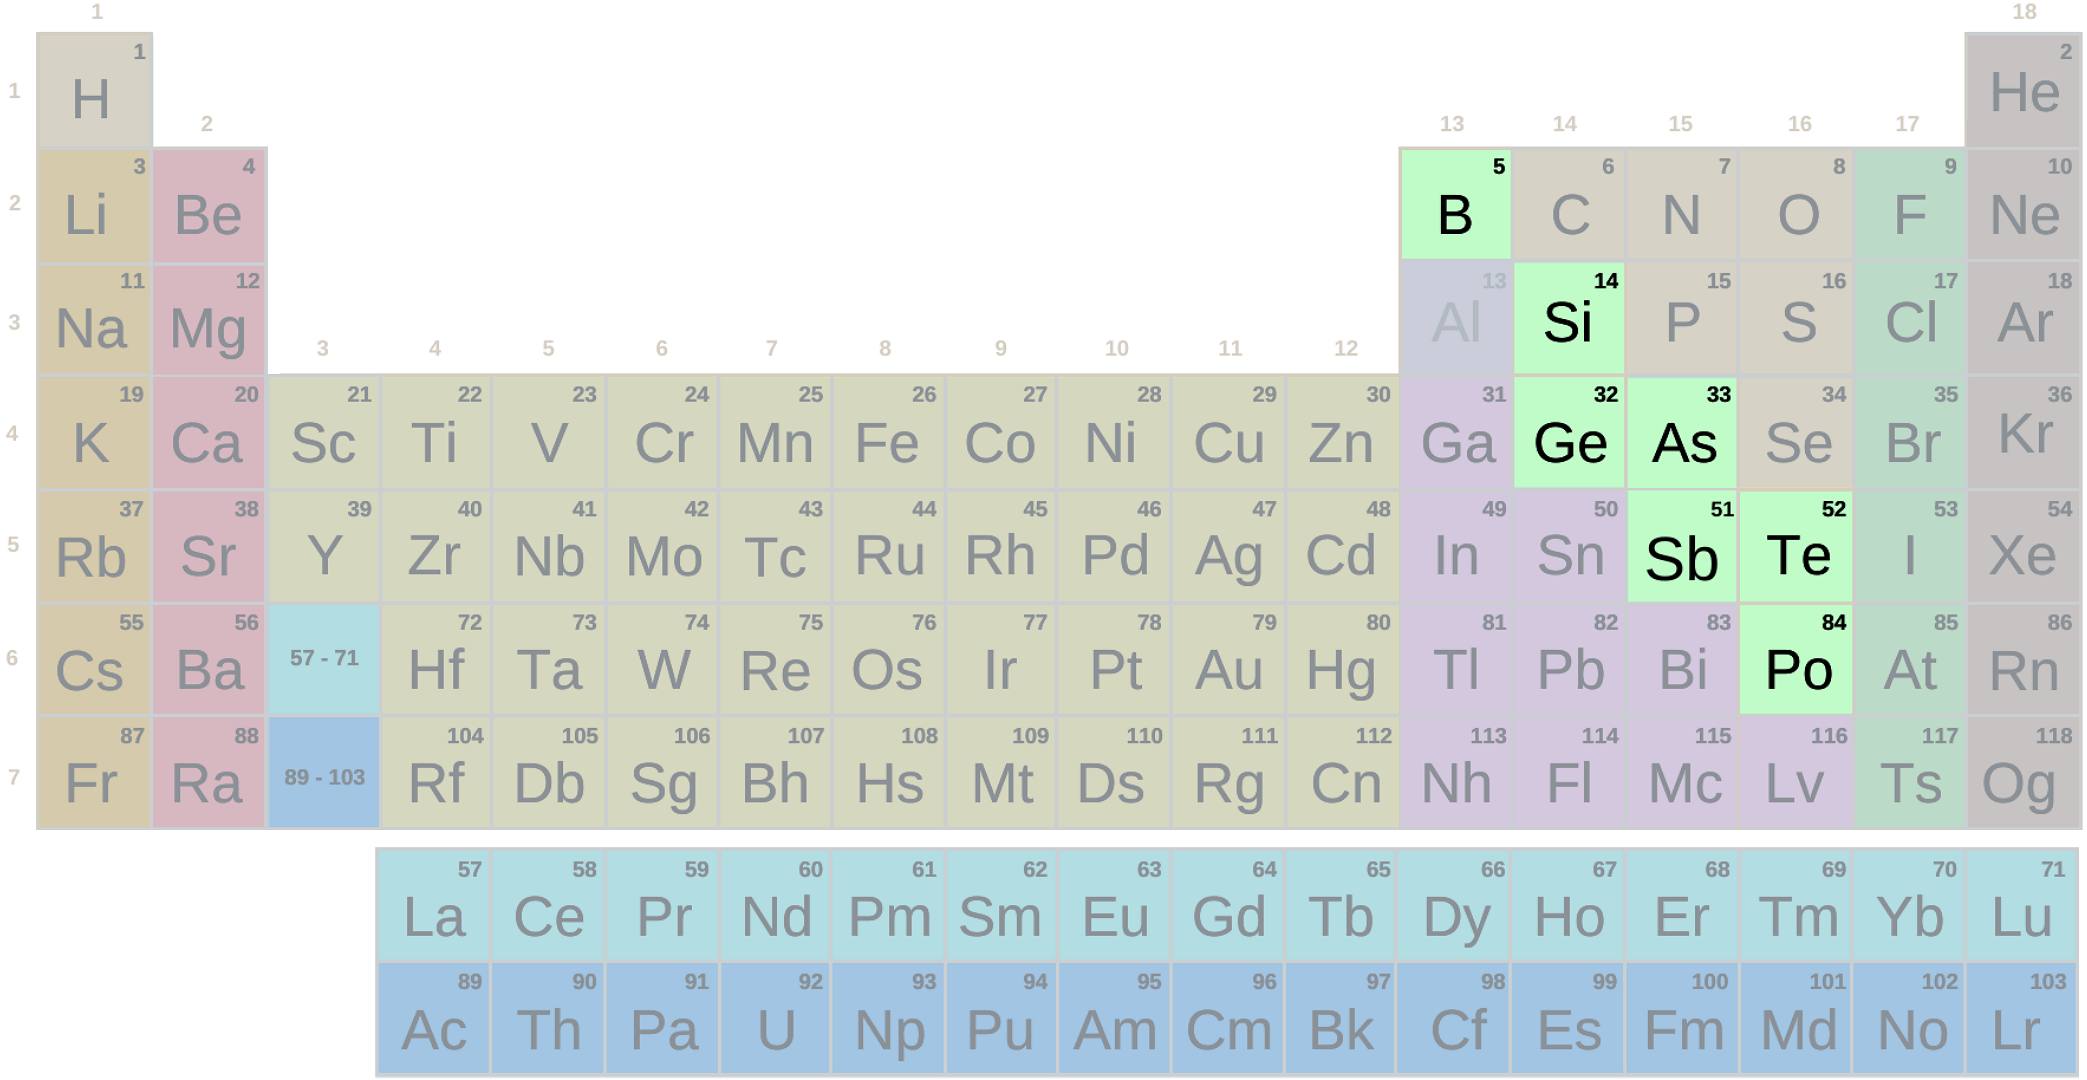 Taula periodikoa, sinbolodun metaloide-taldea (Bigarren Hezkuntza - Batxilergoa)